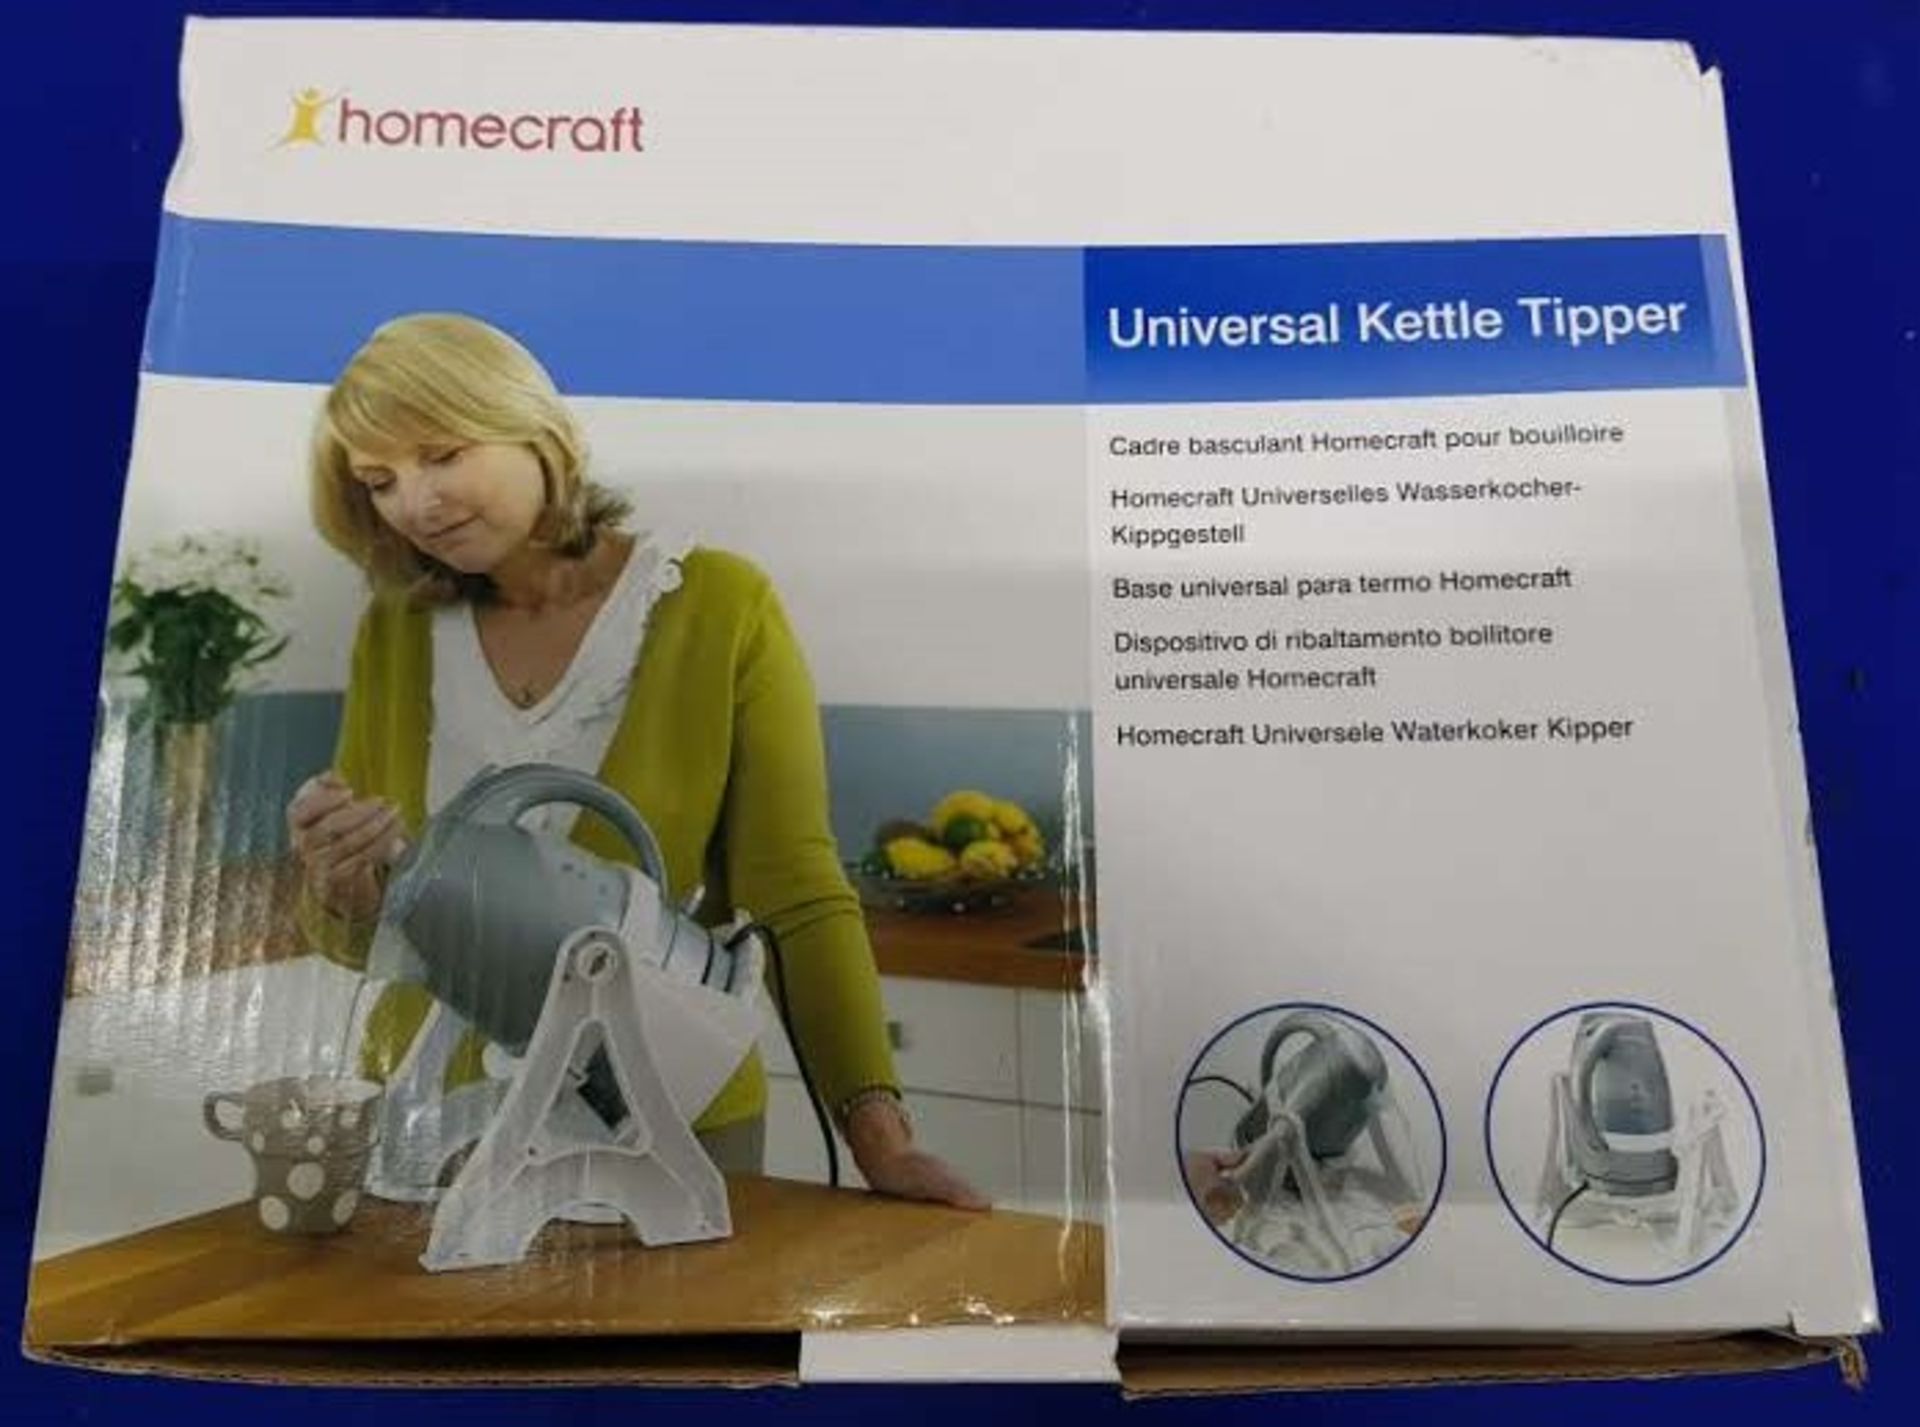 Homecraft Universal Kettle Tipper